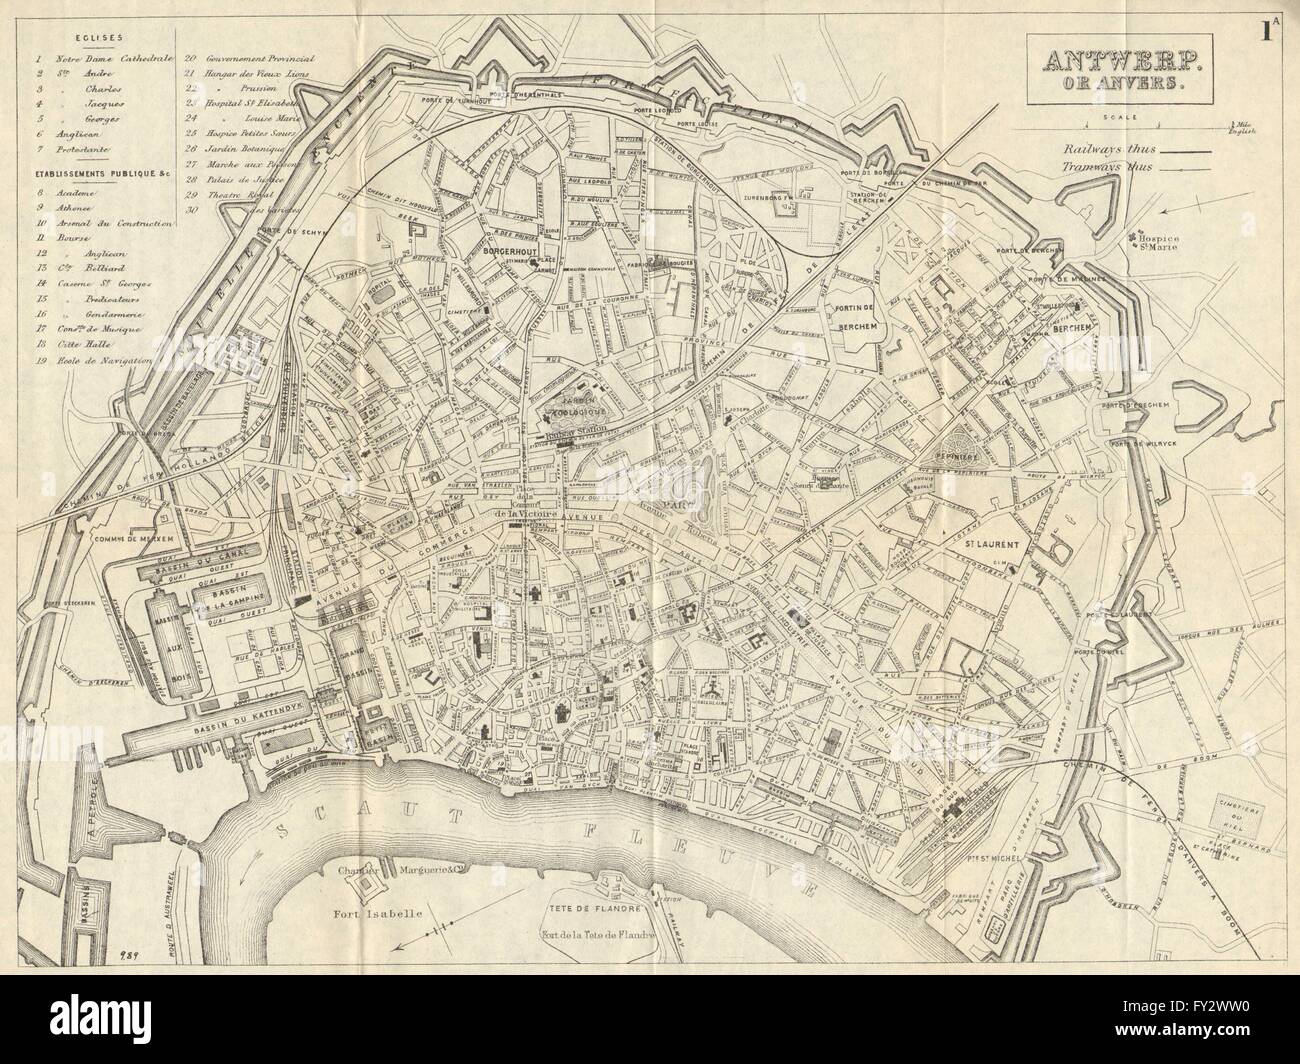 ANTWERP ANVERS ANTWERPEN: Antique town plan. City map. Belgium ...